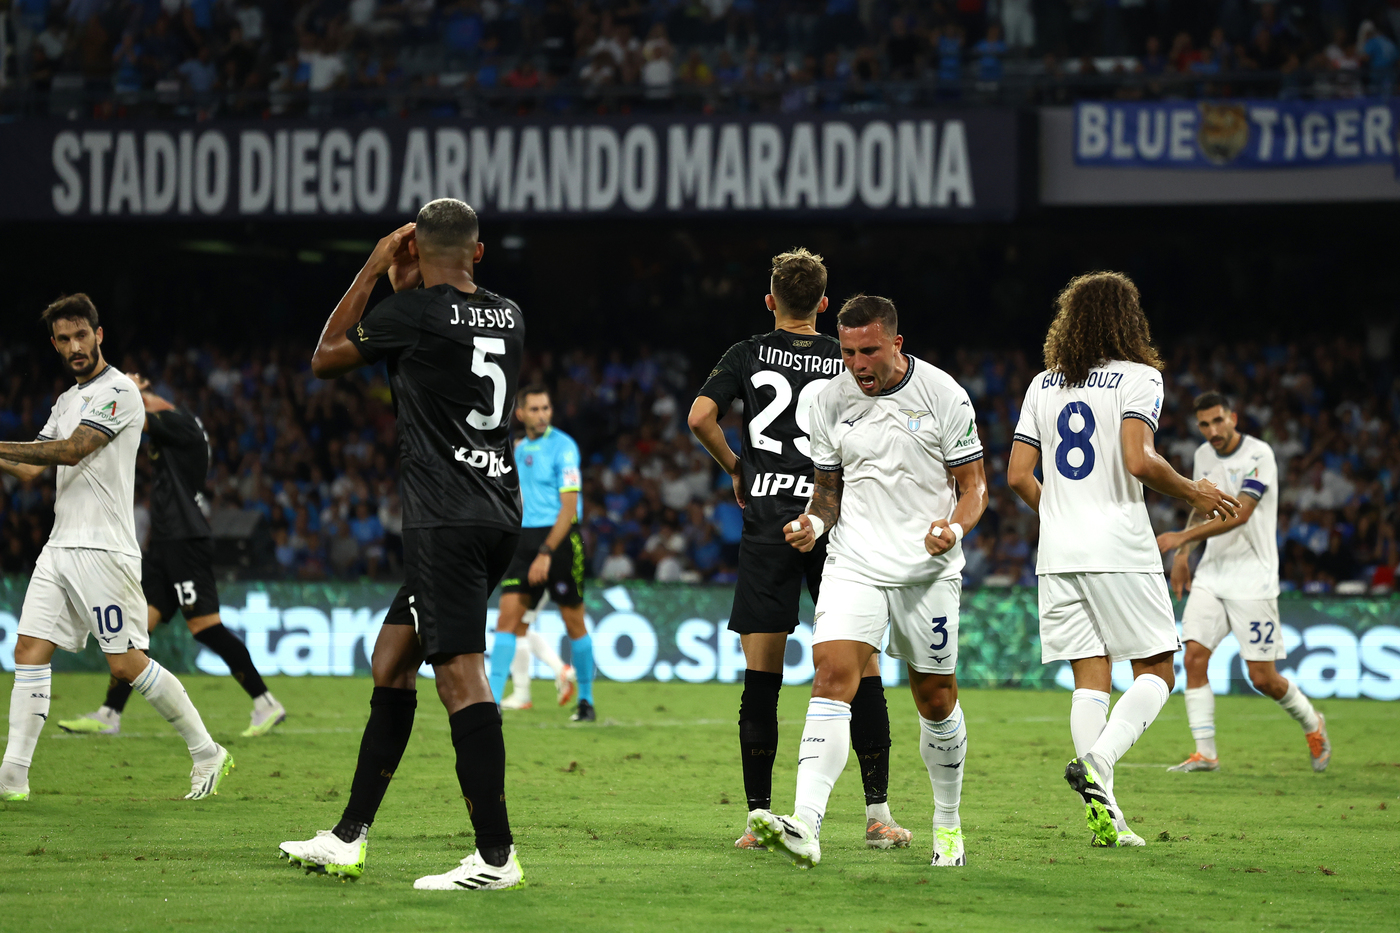 La Lazio esulta al Maradona per il risultato positivo contro il Napoli